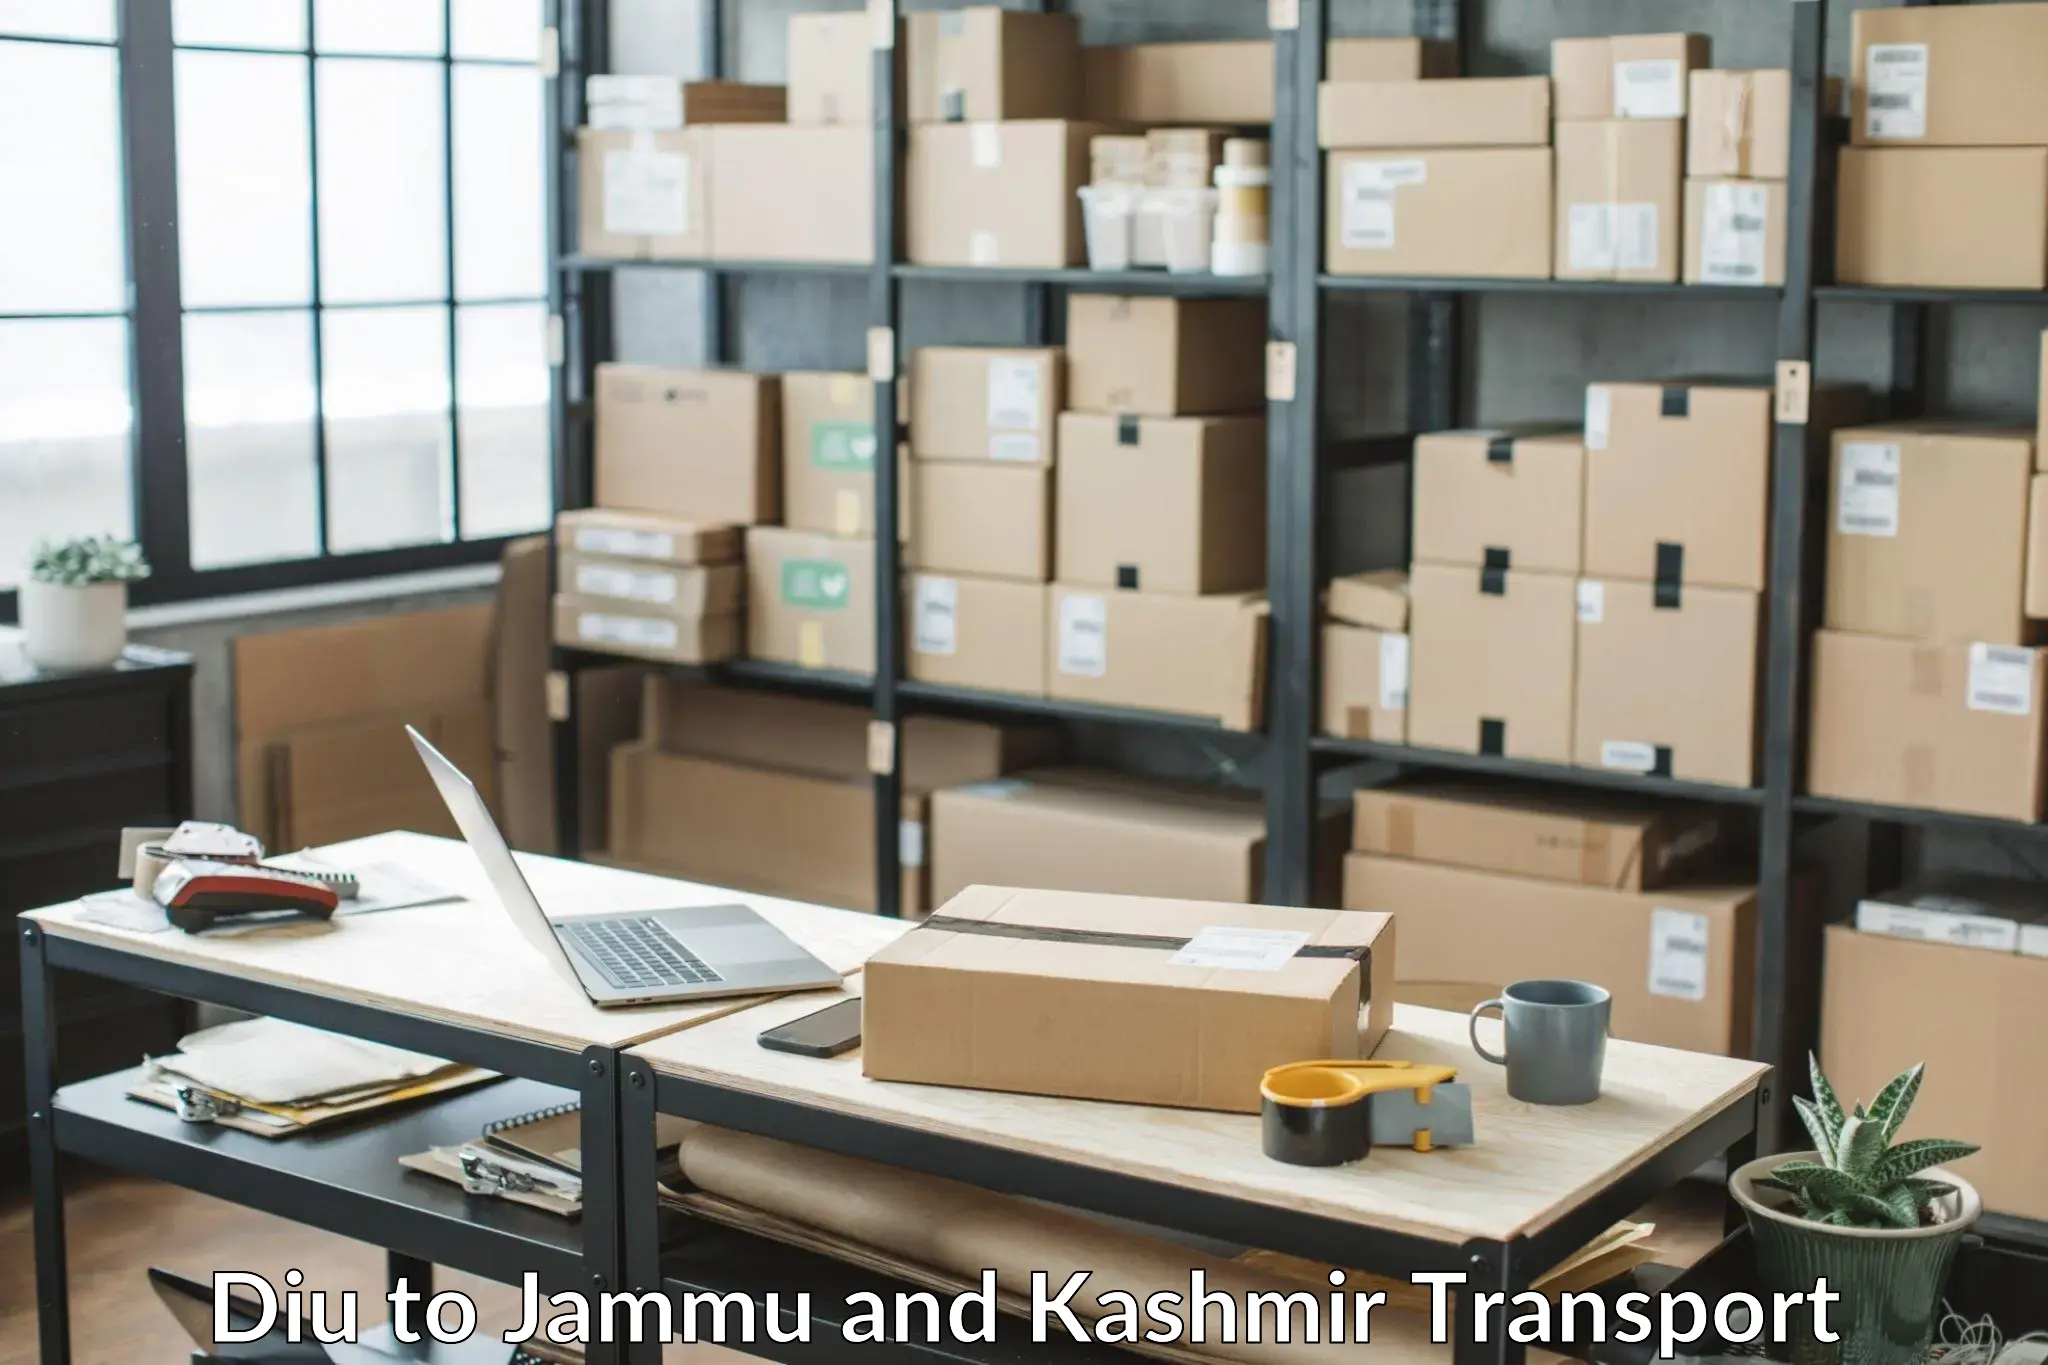 Shipping partner Diu to Jammu